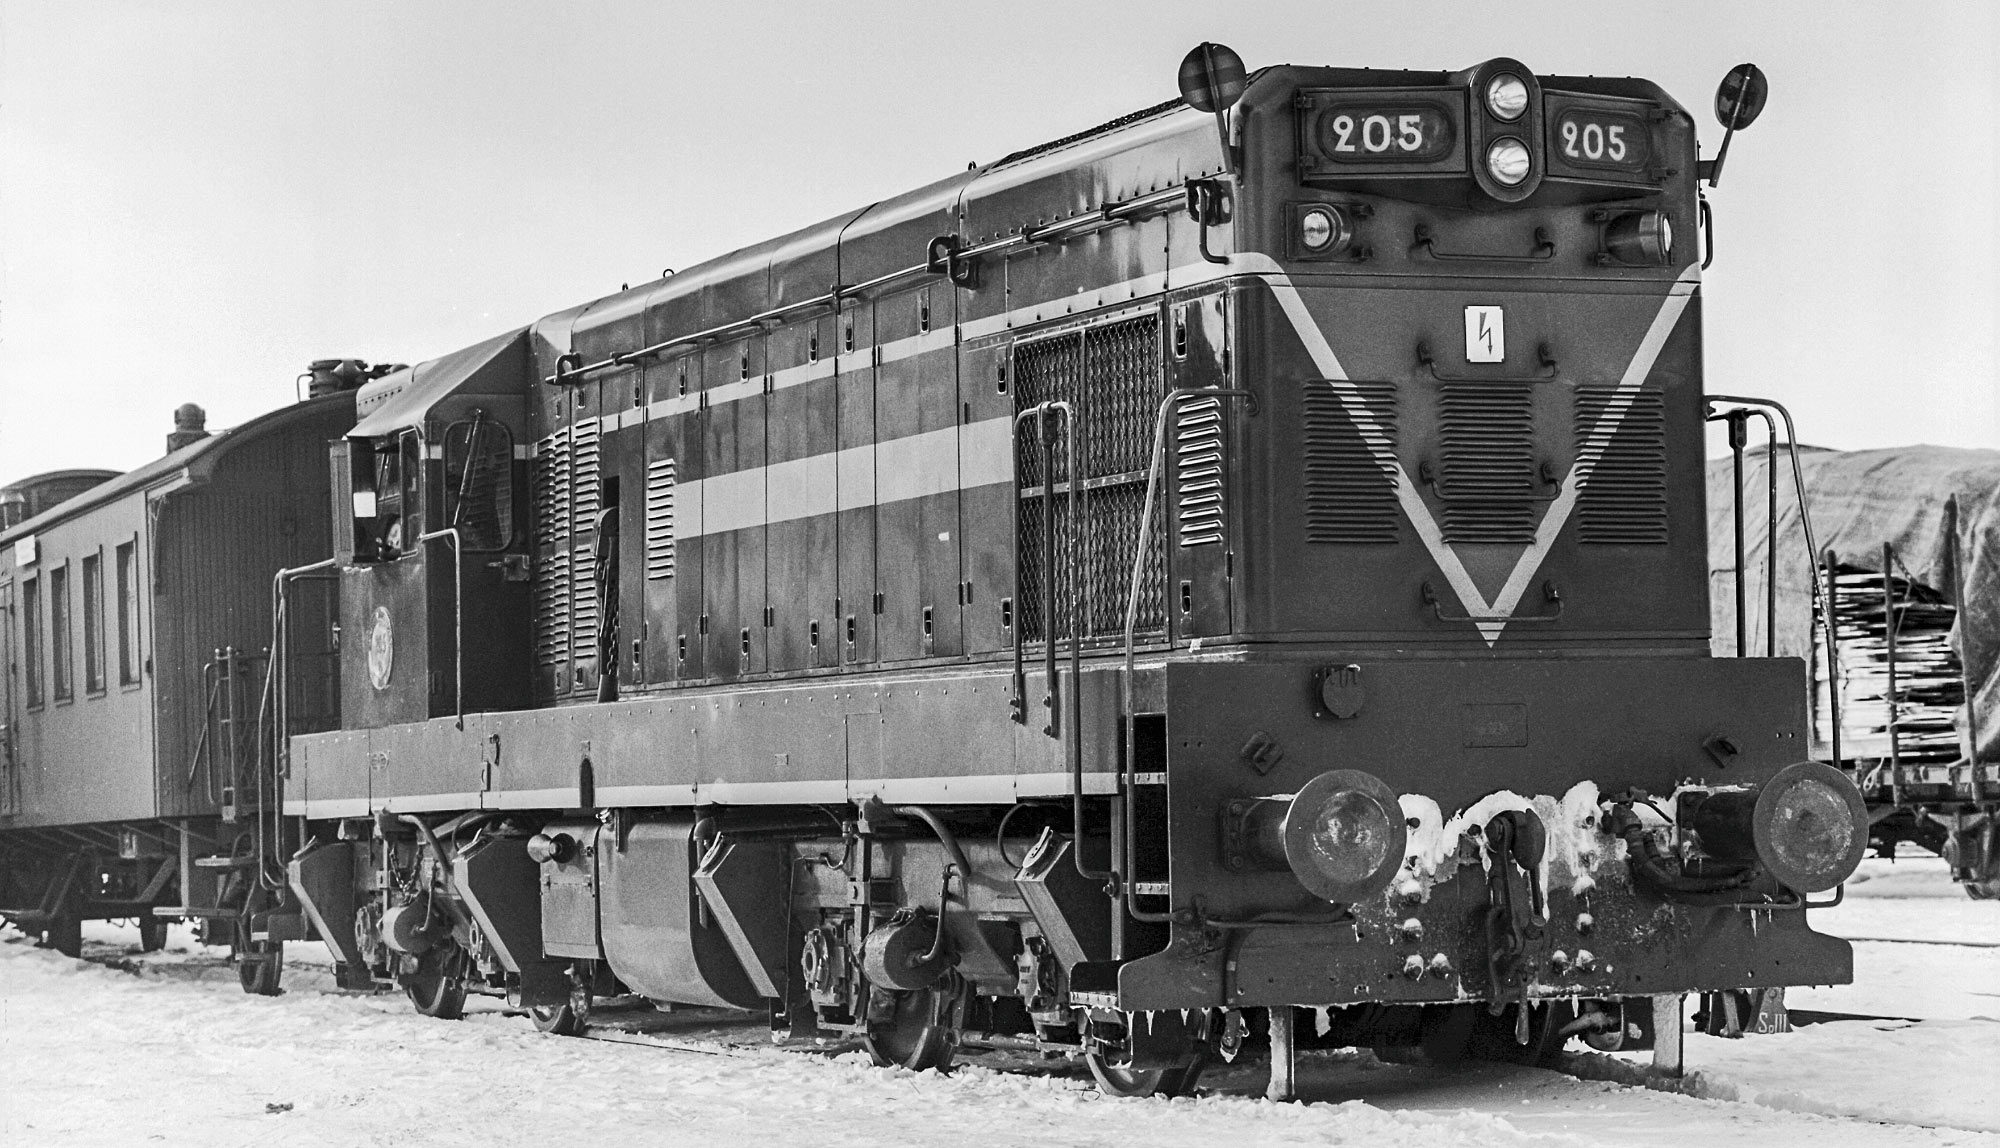 T42 205 1961